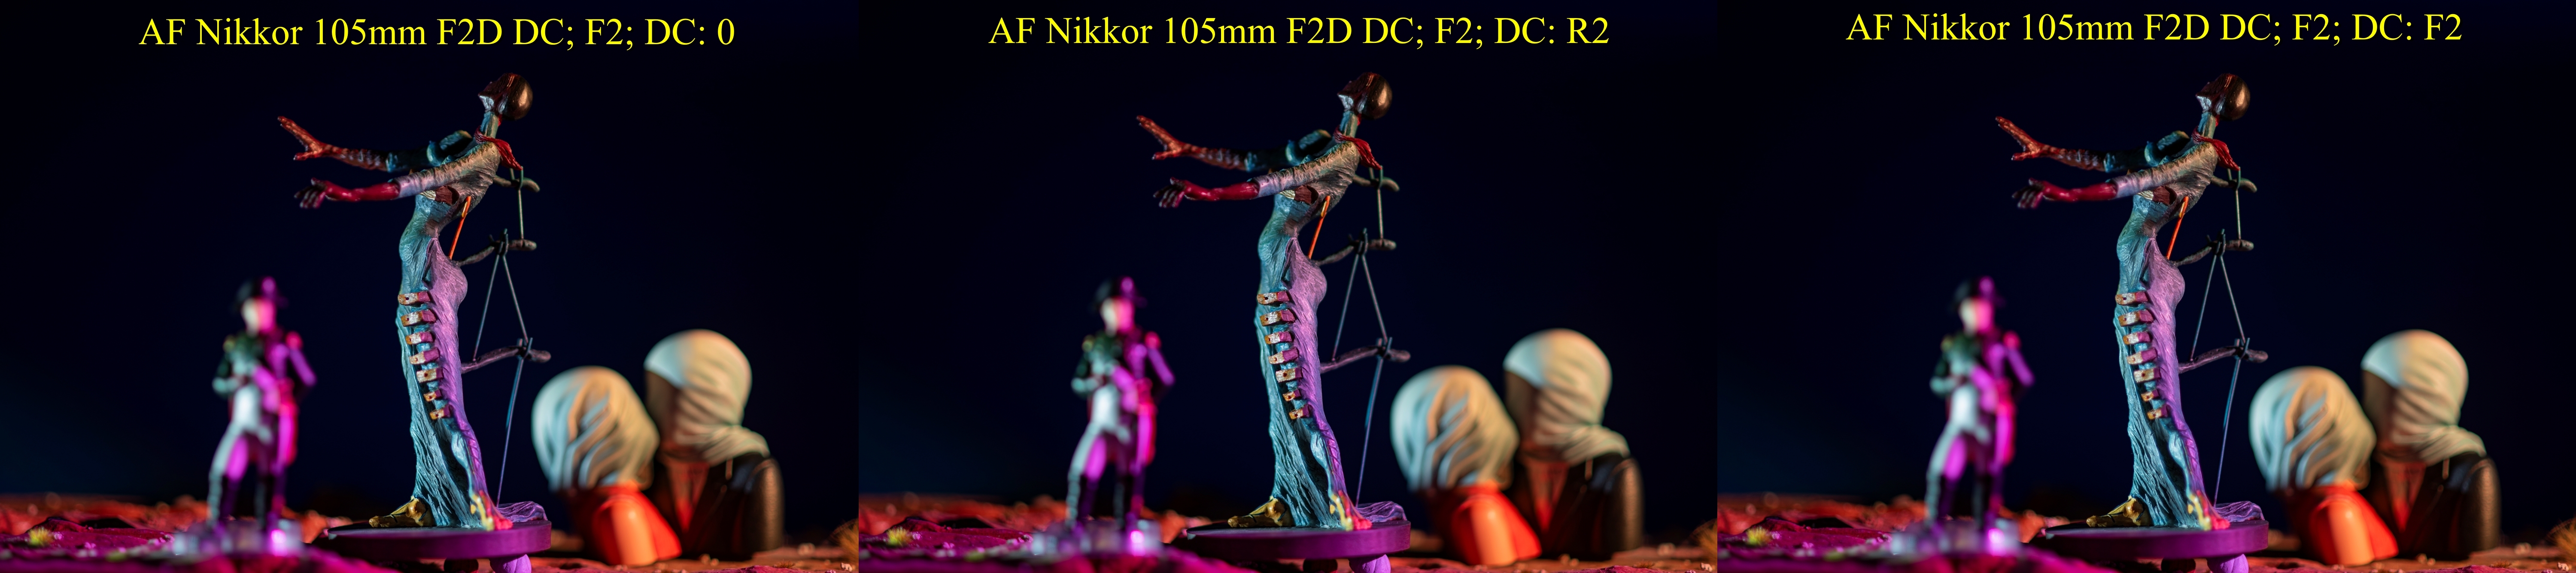 AF Nikkor 105mm F2D DC Burning Giraffe